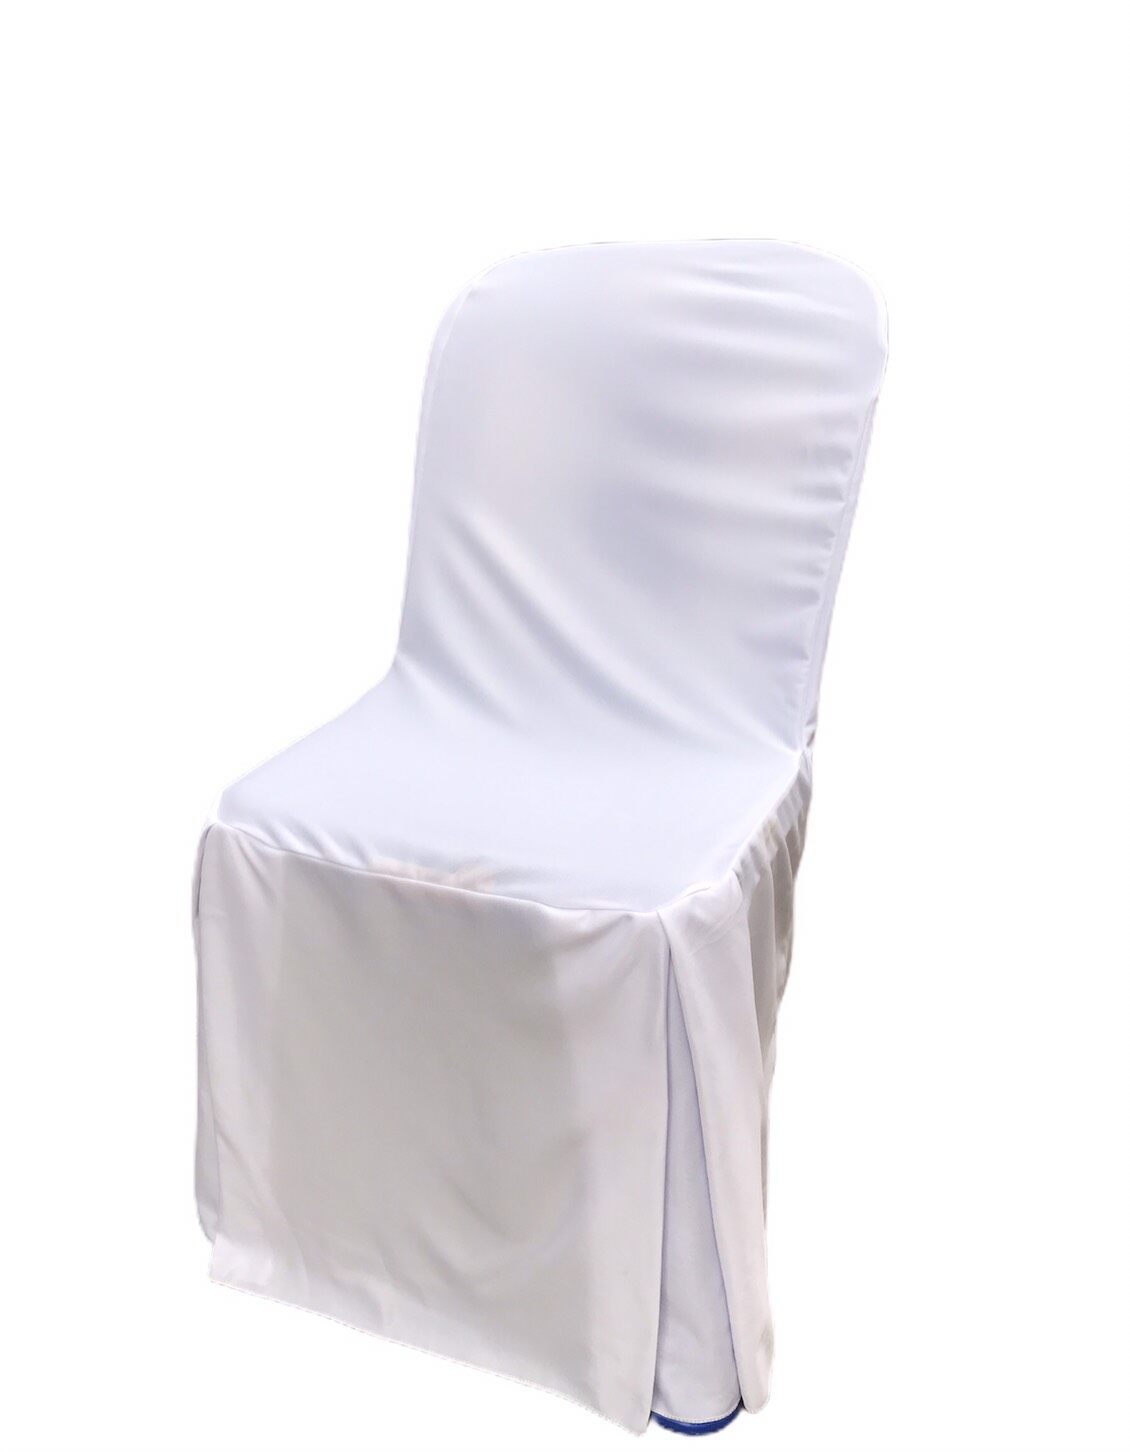 ผ้าคลุมเก้าอี้ ผ้าคลุมเก้าอี้พลาสติก ผ้ามันยืดแบบหนาอย่างดี